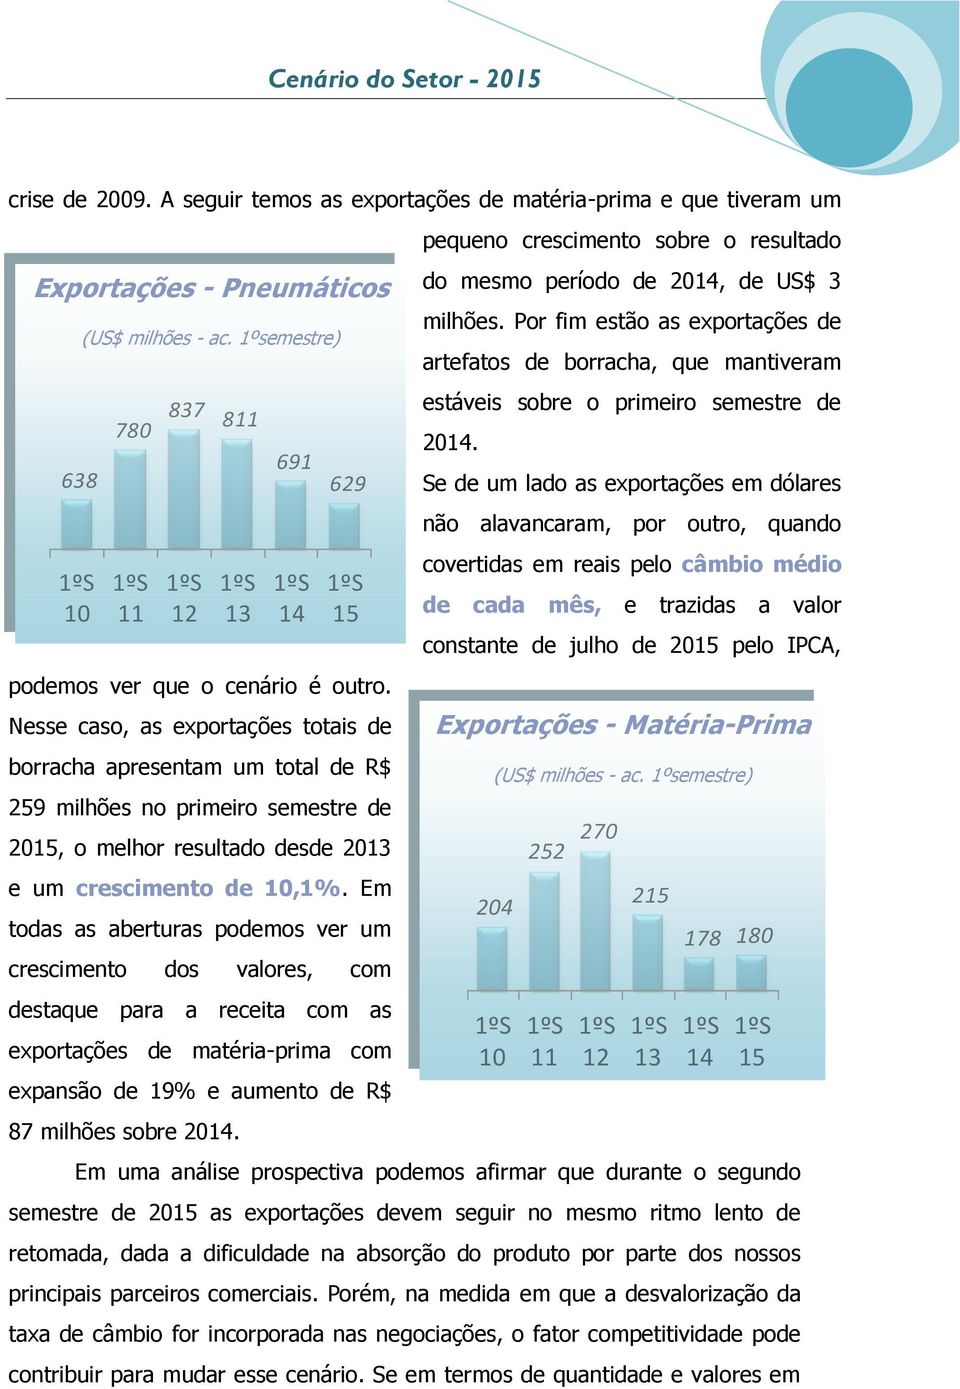 Nesse caso, as exportações totais de borracha apresentam um total de R$ 259 milhões no primeiro semestre de 2015, o melhor resultado desde 2013 e um crescimento de 10,1%.